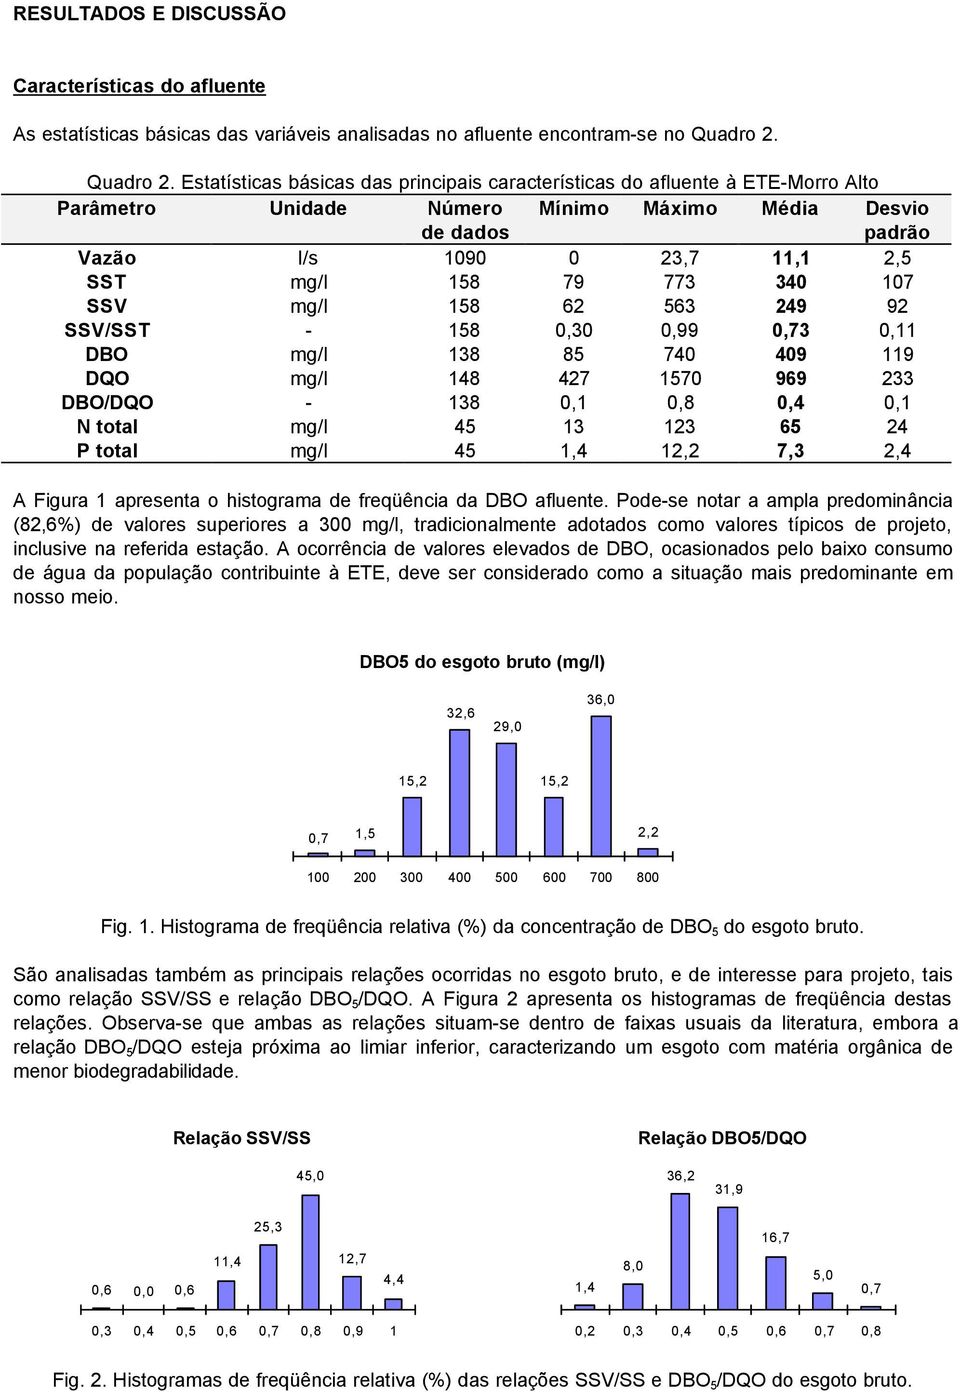 Estatísticas básicas das principais características do afluente à ETE-Morro Alto Vazão l/s 1090 0 23,7 11,1 2,5 SST mg/l 158 79 773 340 107 SSV mg/l 158 62 563 249 92 SSV/SST - 158 0,30 0,99 0,73